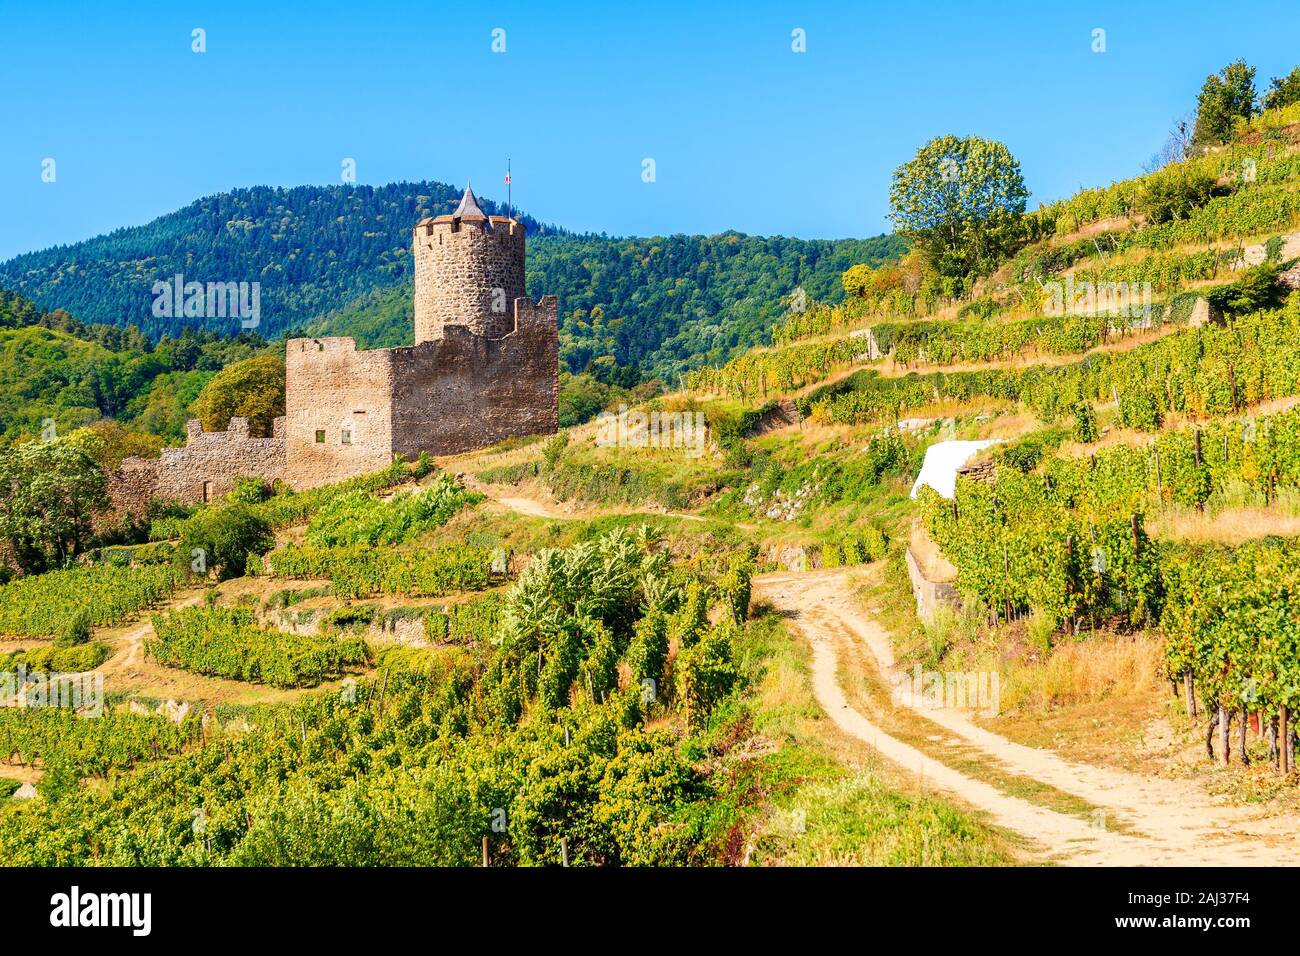 Castello medievale sulle colline tra i vigneti in Kaysersberg villaggio sul vino Alsaziano percorso, Francia Foto Stock